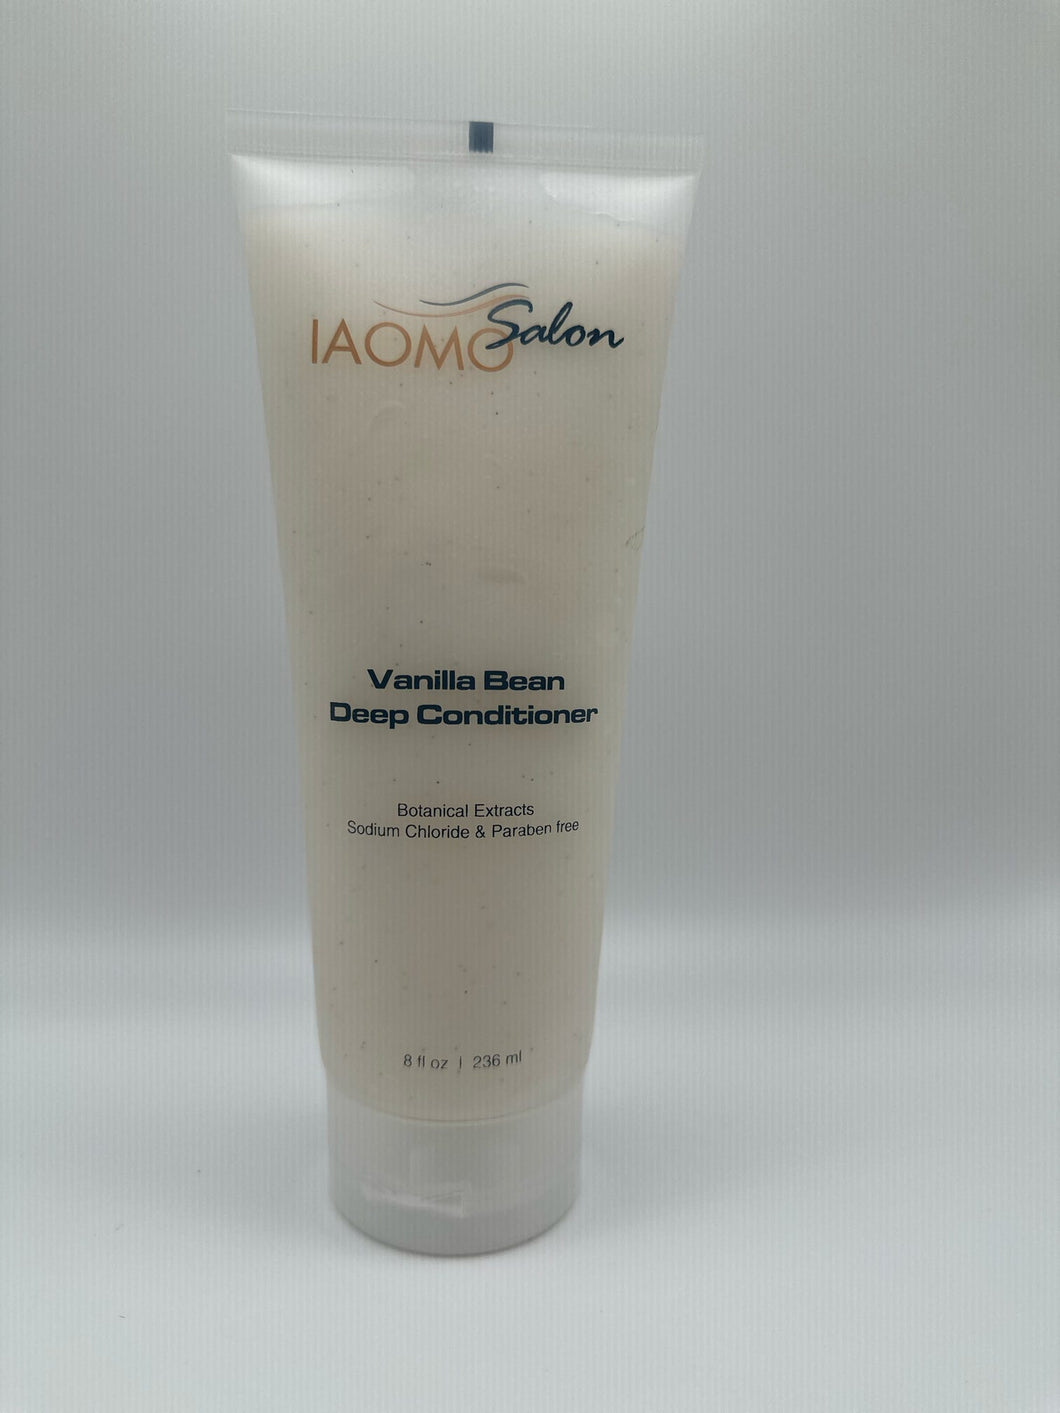 Vanilla Bean Deep Conditioner - Salon Iaomo